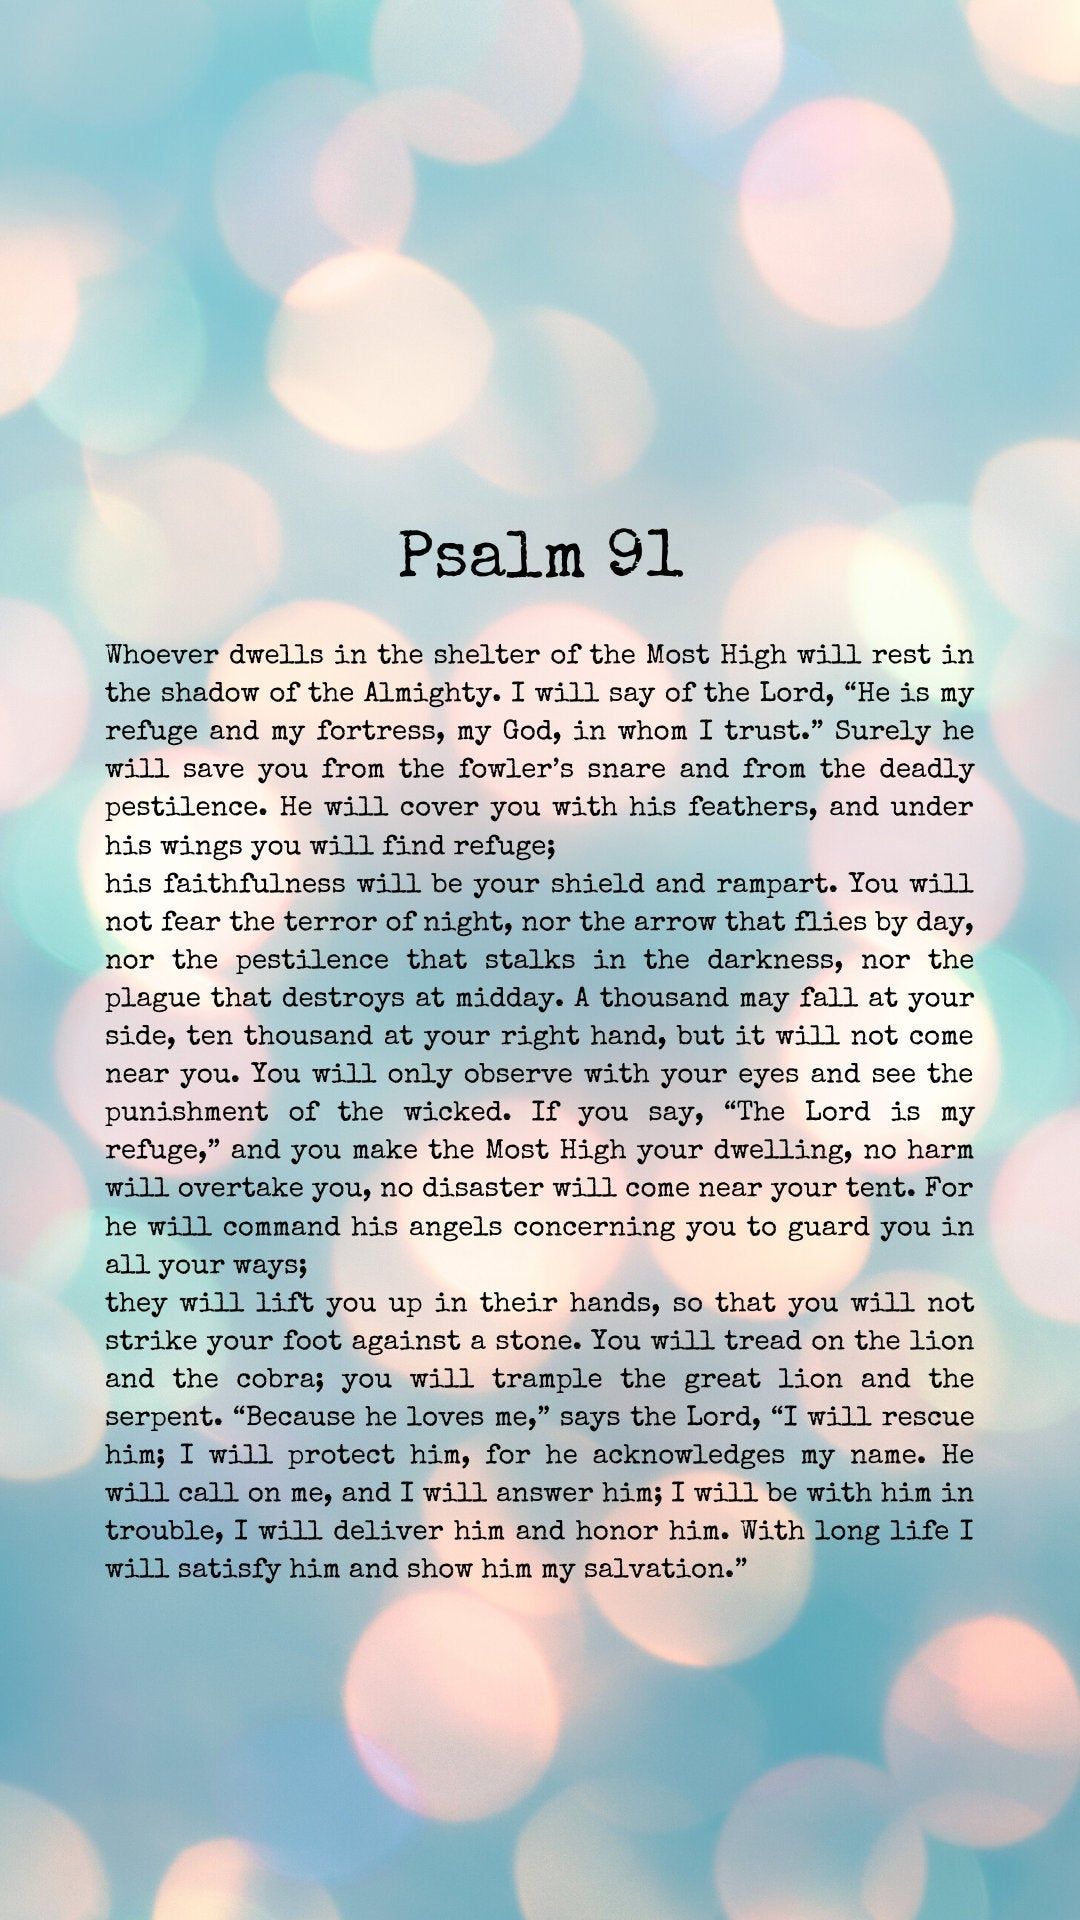 F R E E PSALM 91 iphone wallpaper screen saver. iPhone wallpaper quotes bible, Psalms, Bible verse wallpaper